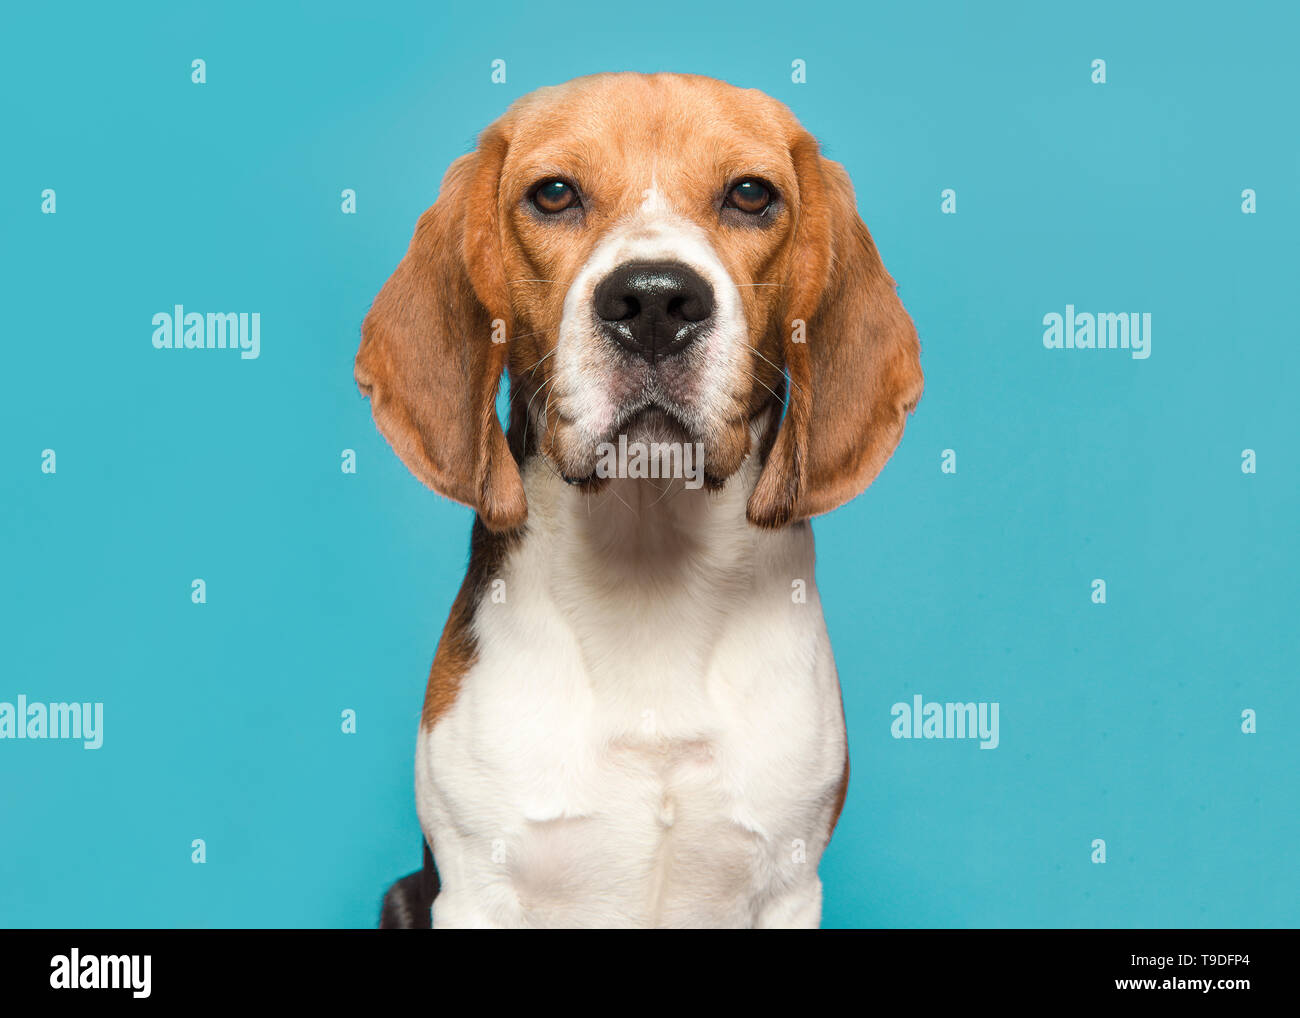 Portrait d'un beagle regardant la caméra sur un fond bleu dans une image horizontale Banque D'Images